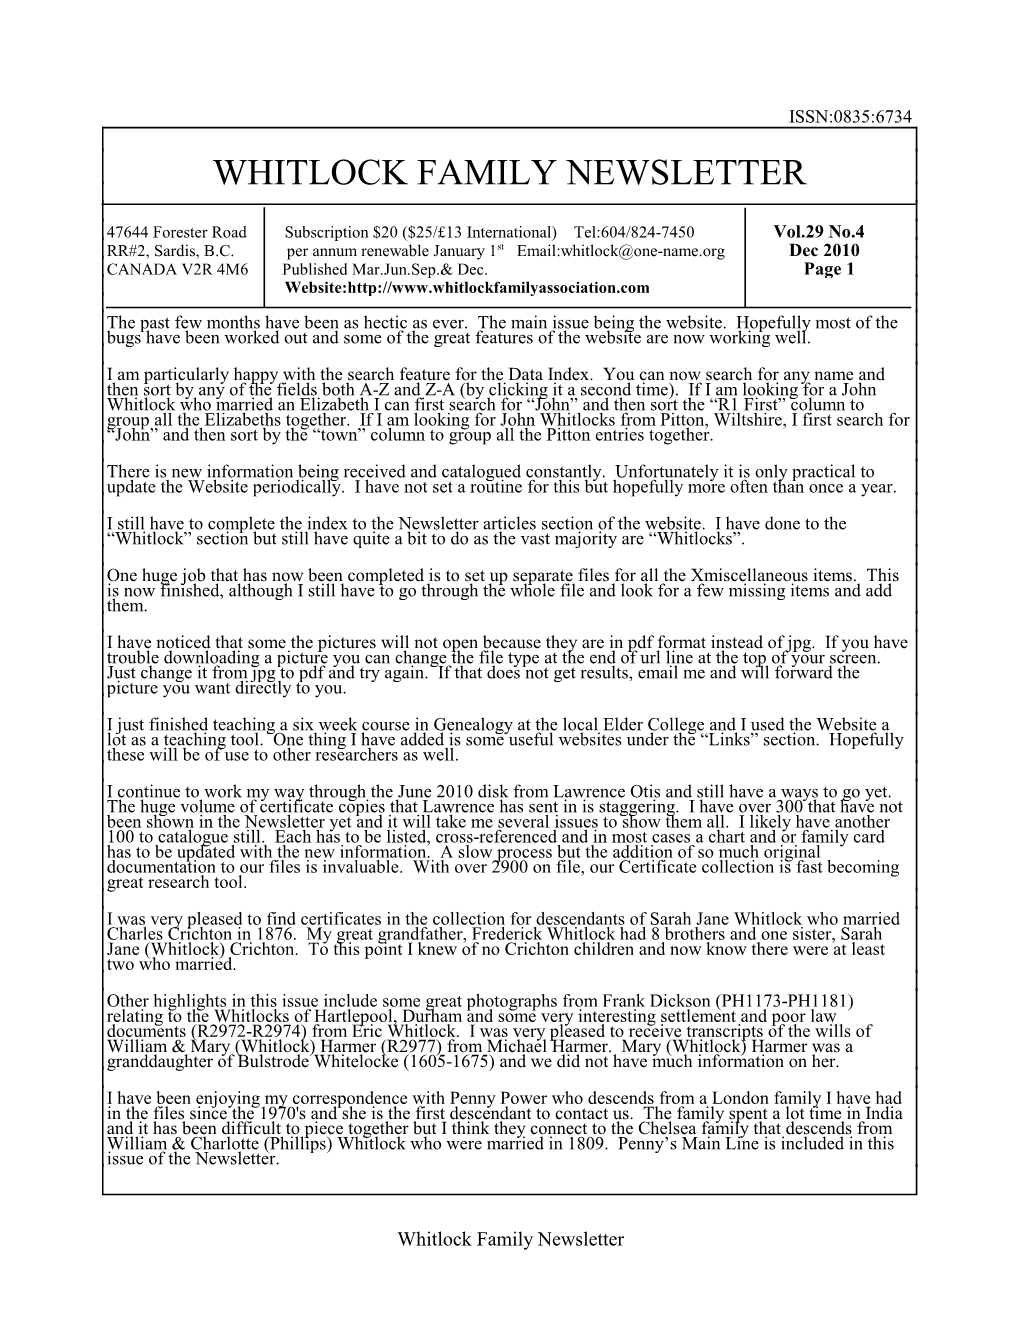 Whitlock Family Newsletter